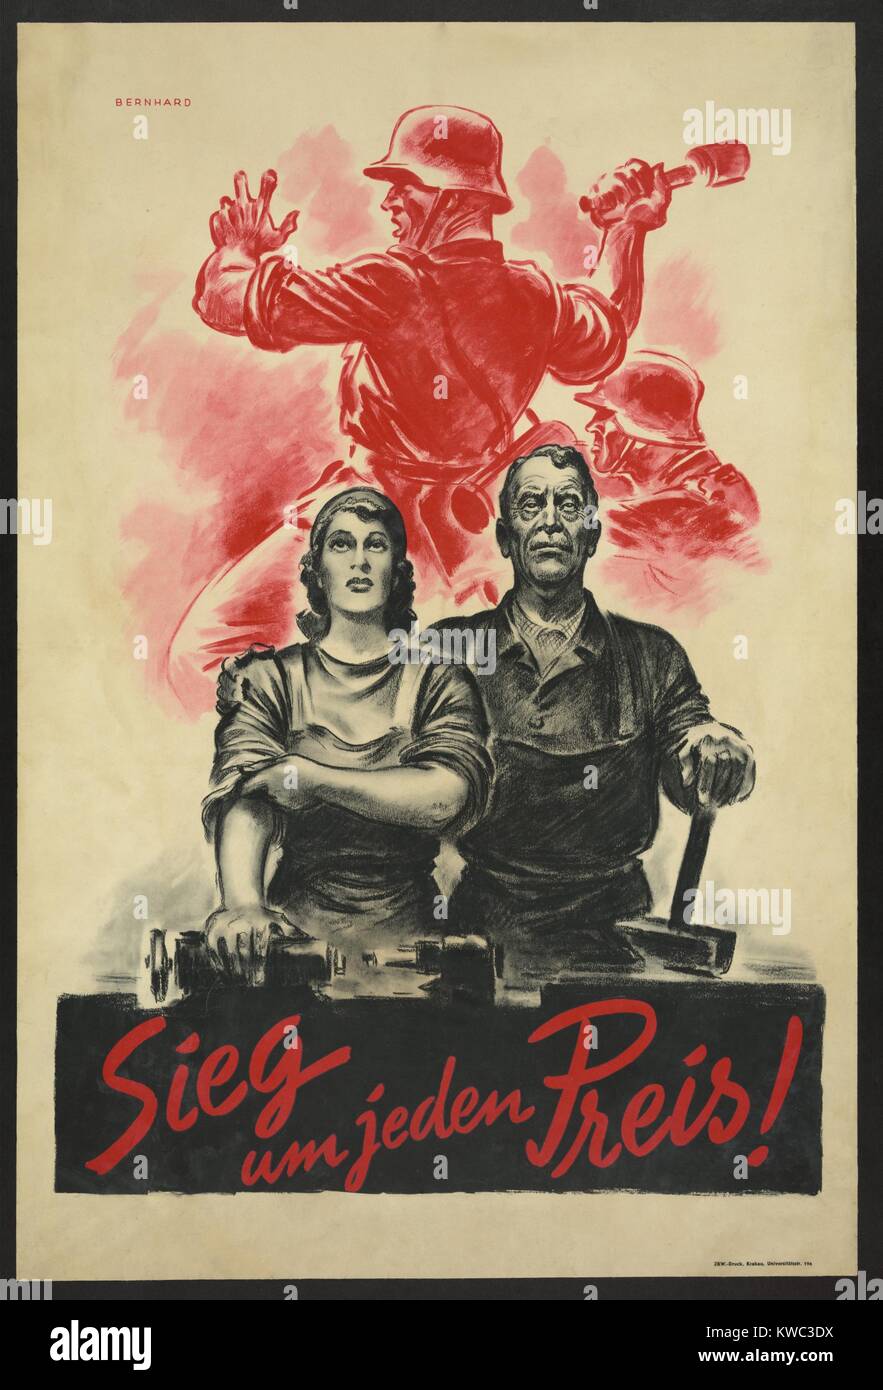 Sieg um jeden Preis ! La victoire à tout prix ! 1942 2 Guerre Mondiale allemand affiche montrant deux travailleurs civils dans un contexte de pierres soldat grenade. L'Allemagne est passé à une 'guerre totale' économie en 1942-1943. (BSLOC   2015 13 62) Banque D'Images